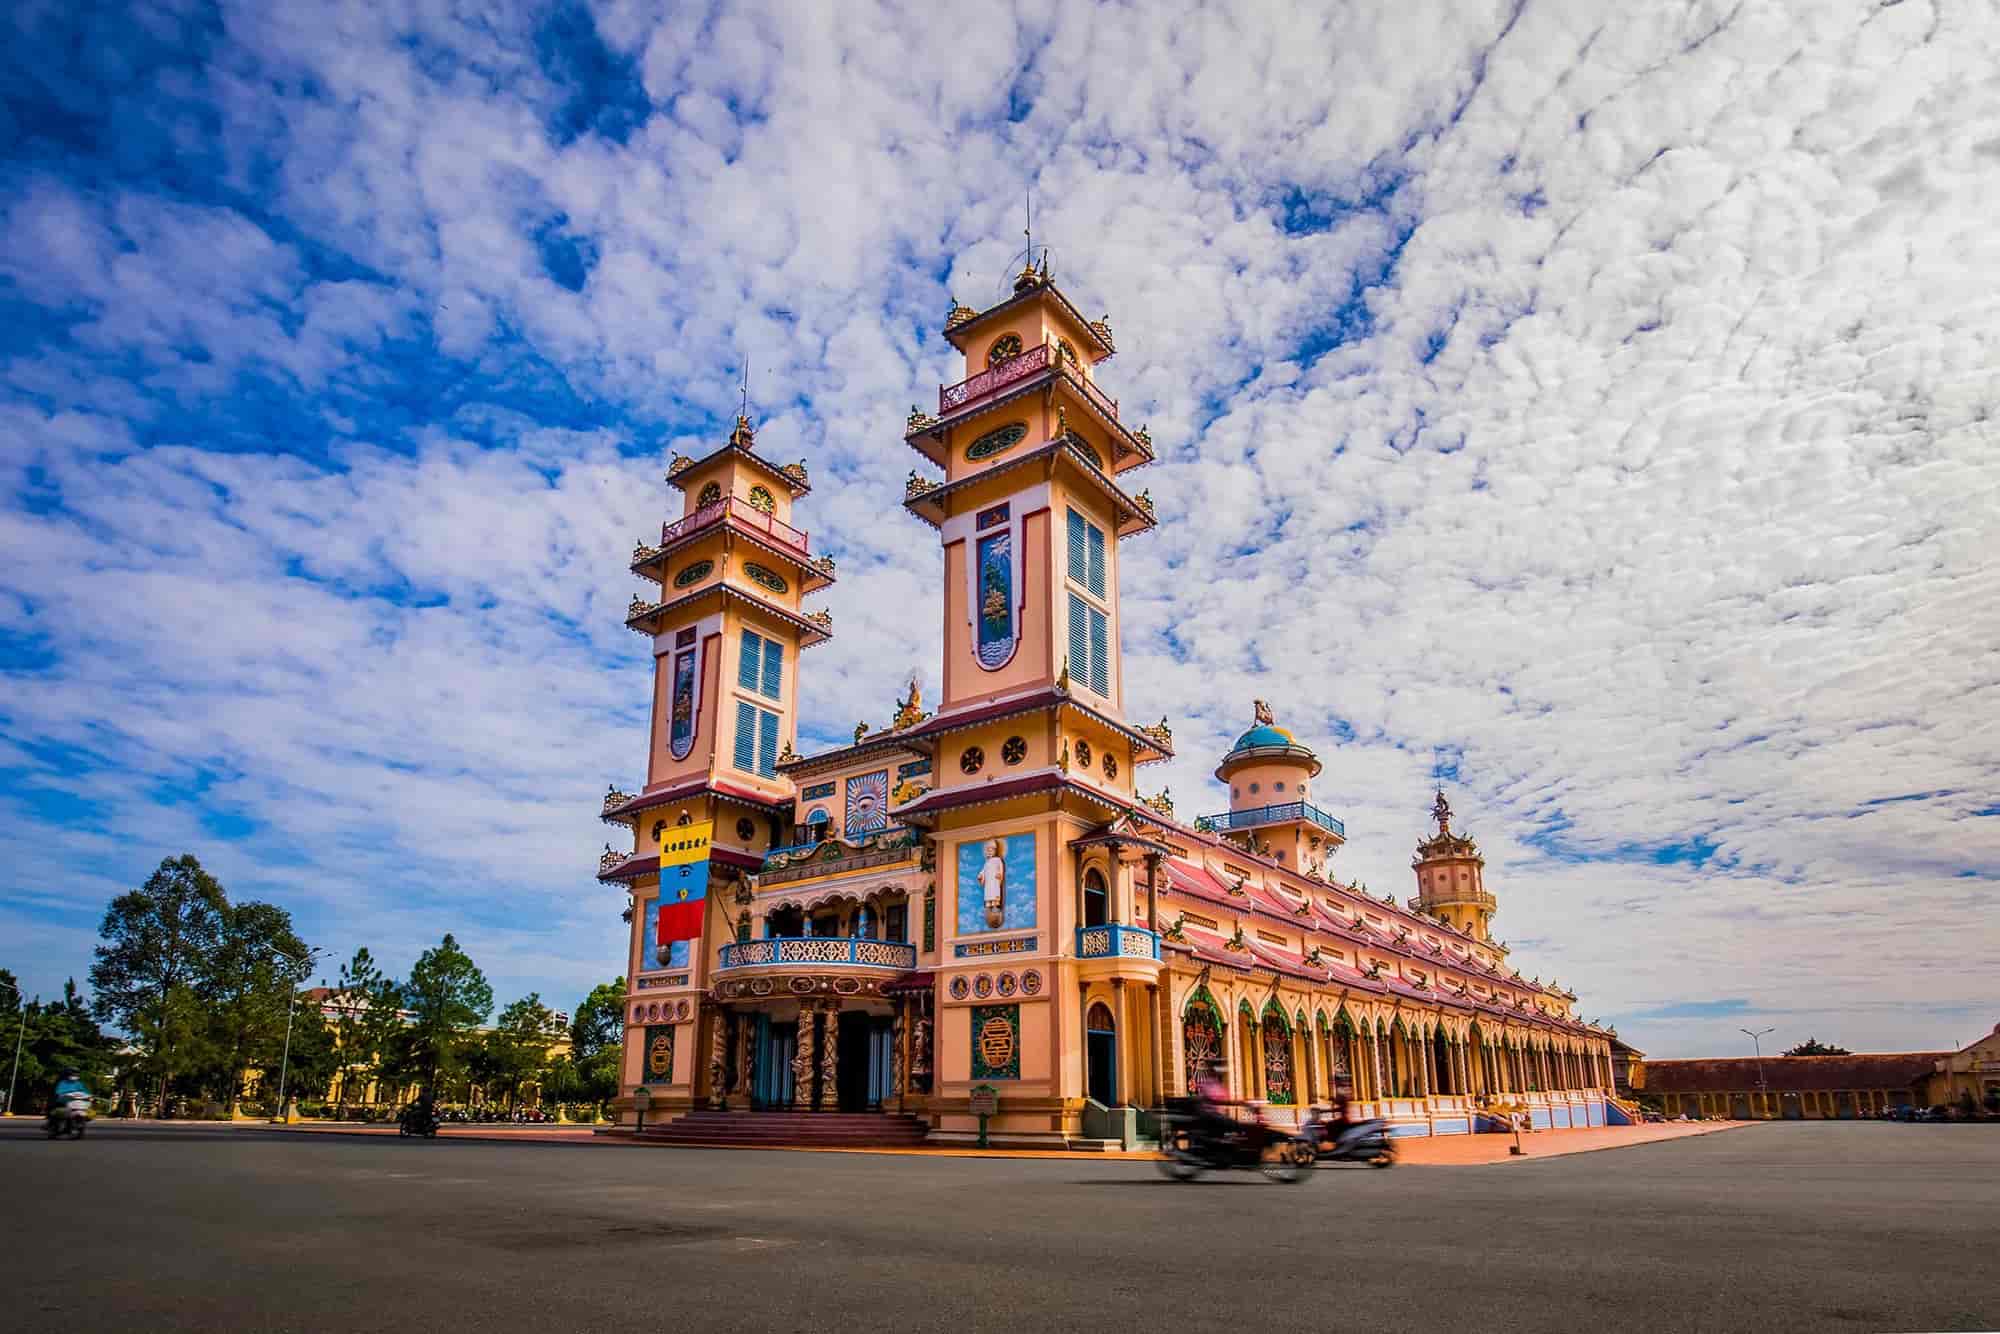 Thị xã có gần 90% dân số theo đạo Cao Đài. Đây cũng là nơi đặt toà thánh Tây Ninh, cơ quan trung ương của tôn giáo Cao Đài. Không những thế, đây còn là điểm du lịch nổi tiếng, thu hút hàng chục nghìn khách tham quan hàng năm.